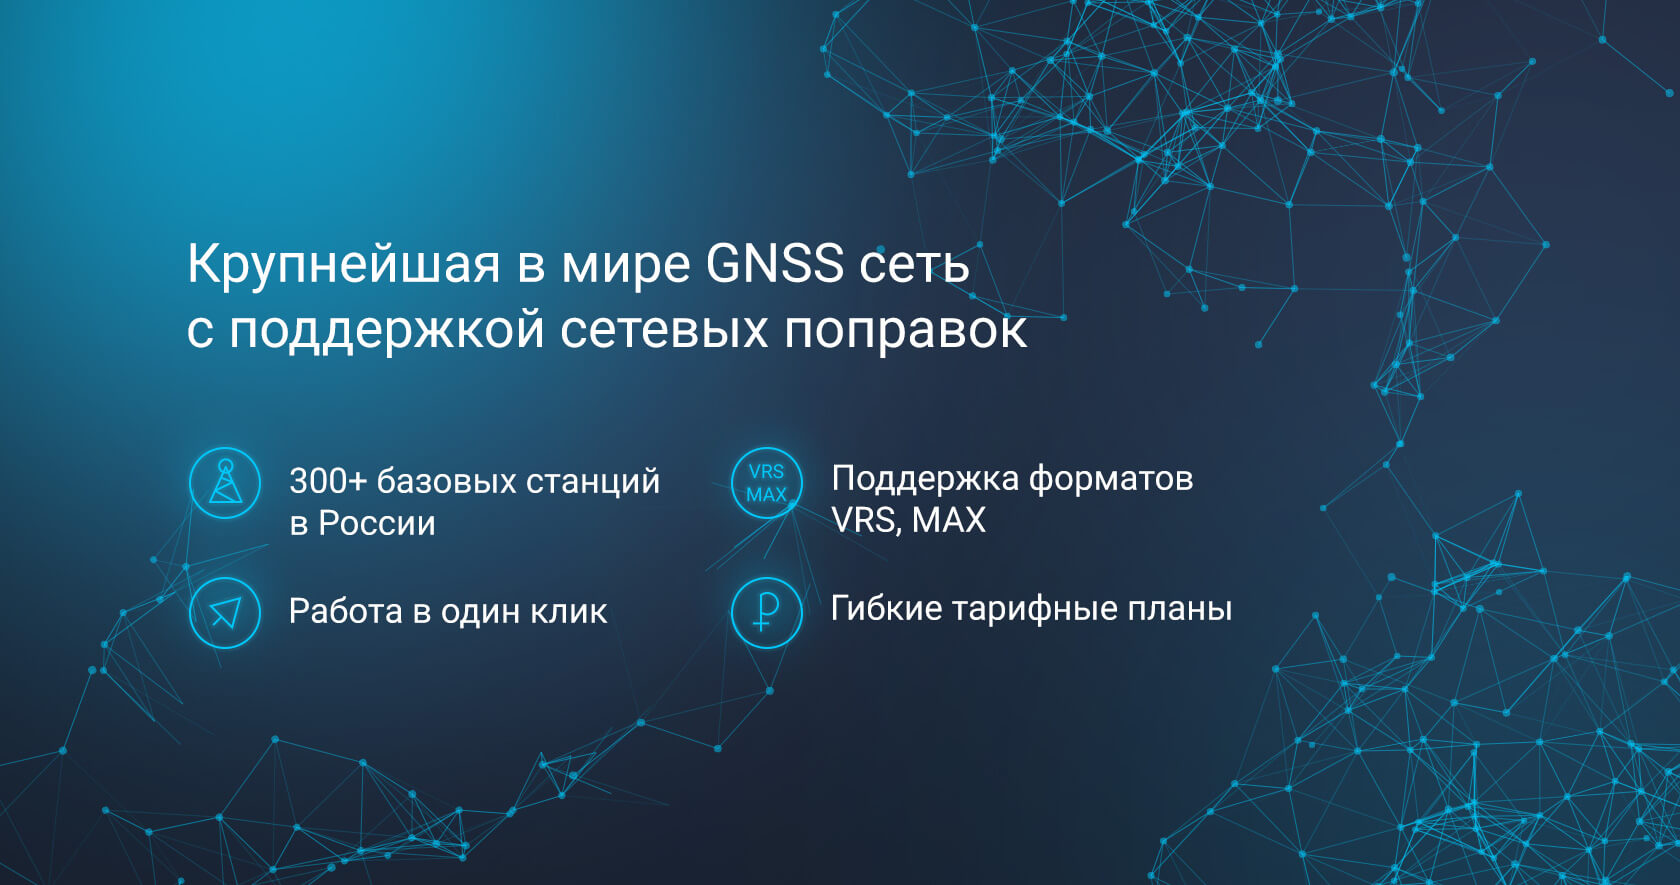 HxGN SmartNet - Крупнейшая в России GNSS сеть с поддержкой технологий сетевых поправок